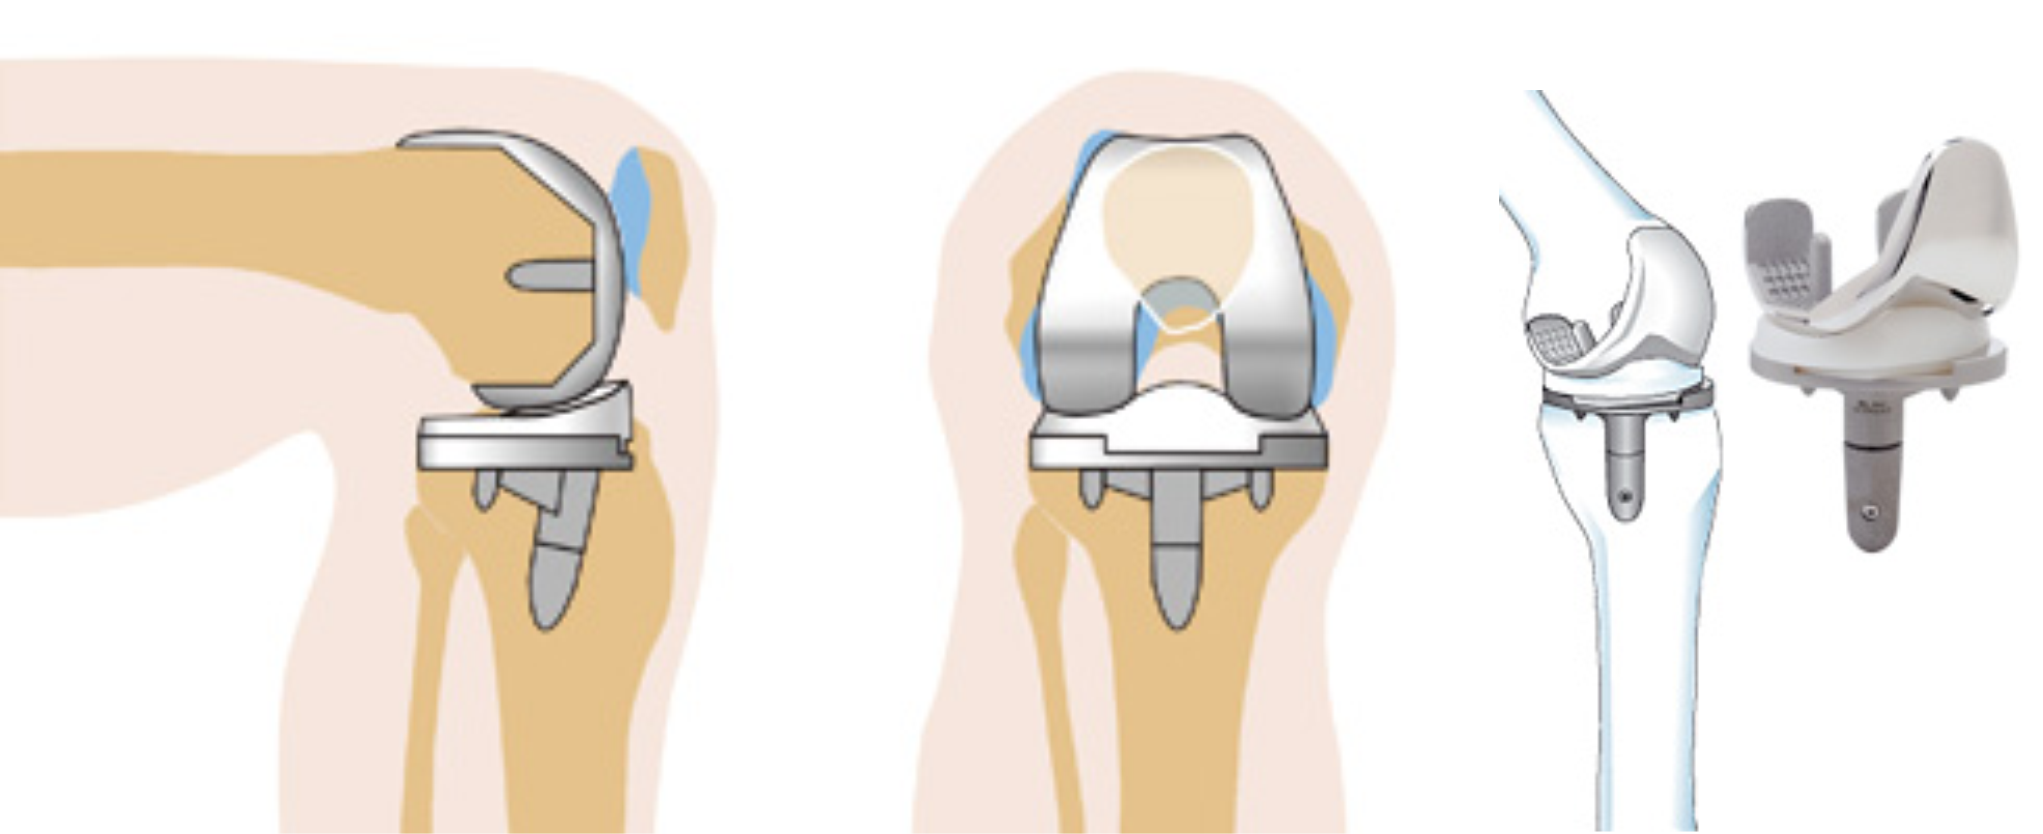 Эндопротез коленного сустава. Тотальное эндопротезирование коленного сустава DEPUY. Эндопротезирование коленного сустава этапы операции. Артроз коленного сустава эндопротез.